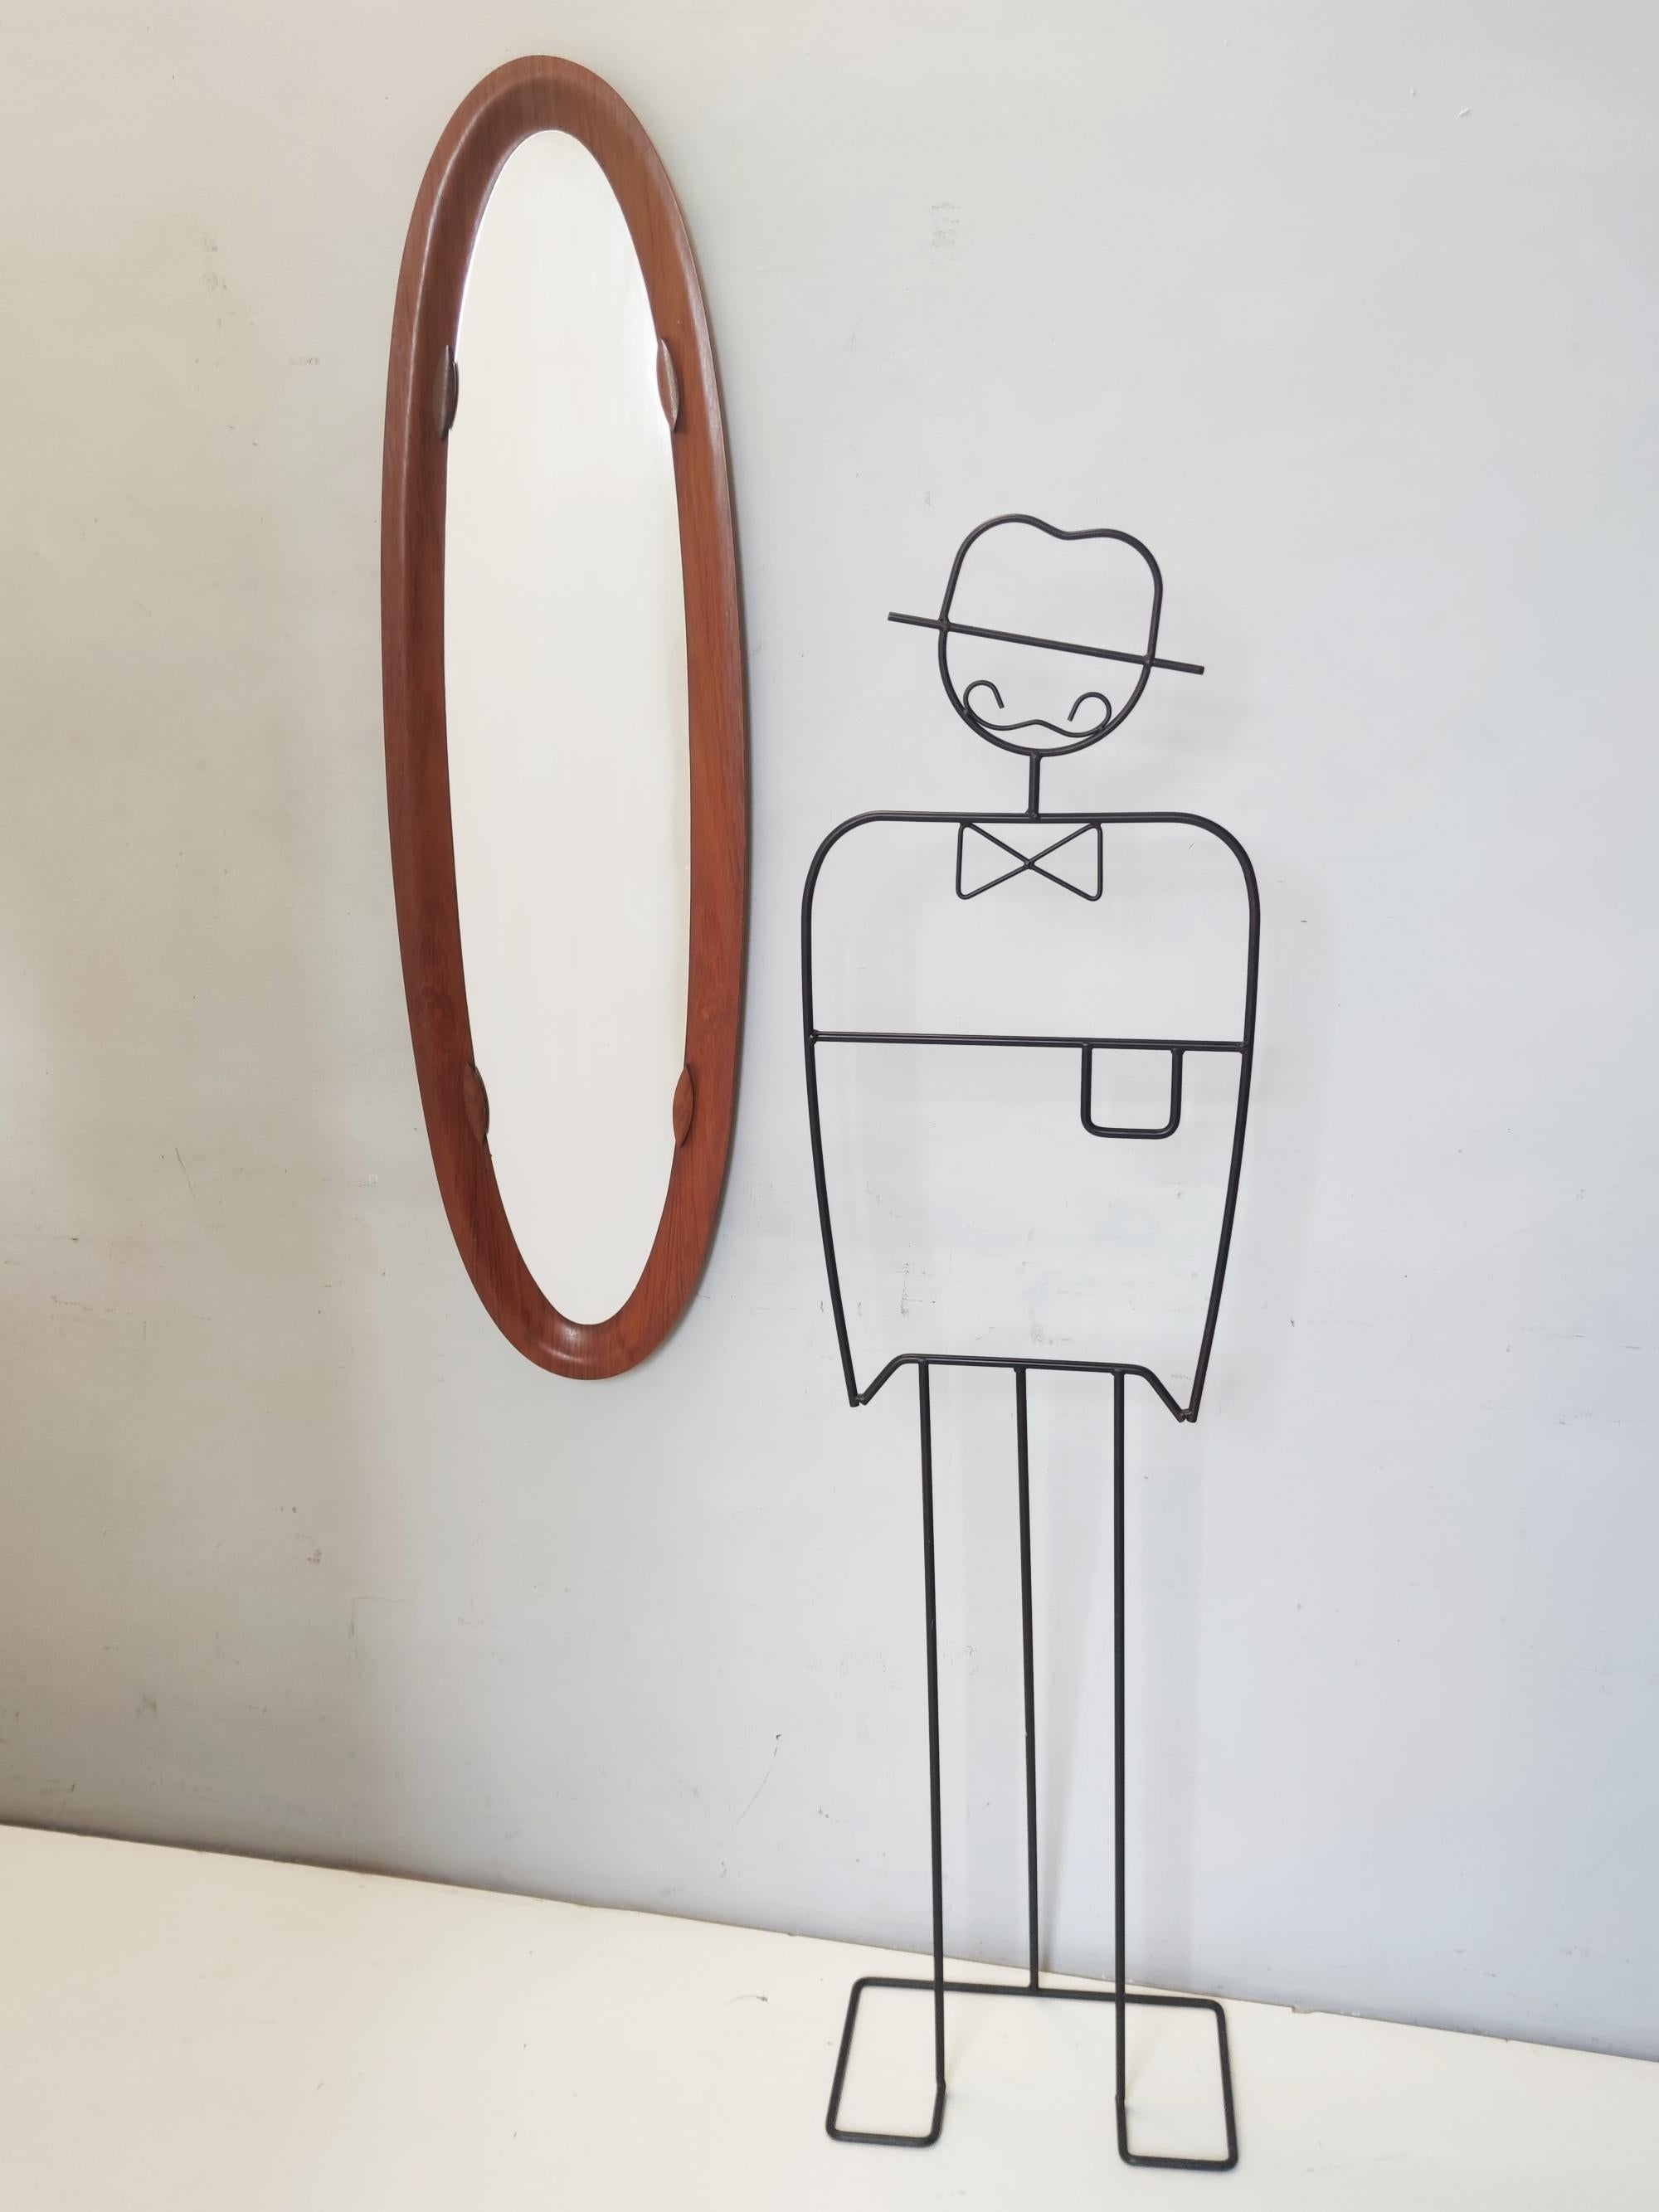 Italie, années 1960-1970.
Il présente un cadre en bois incurvé.
Ce miroir est une pièce vintage, il peut donc présenter de légères traces d'utilisation, mais il peut être considéré comme étant en excellent état d'origine et prêt à devenir une